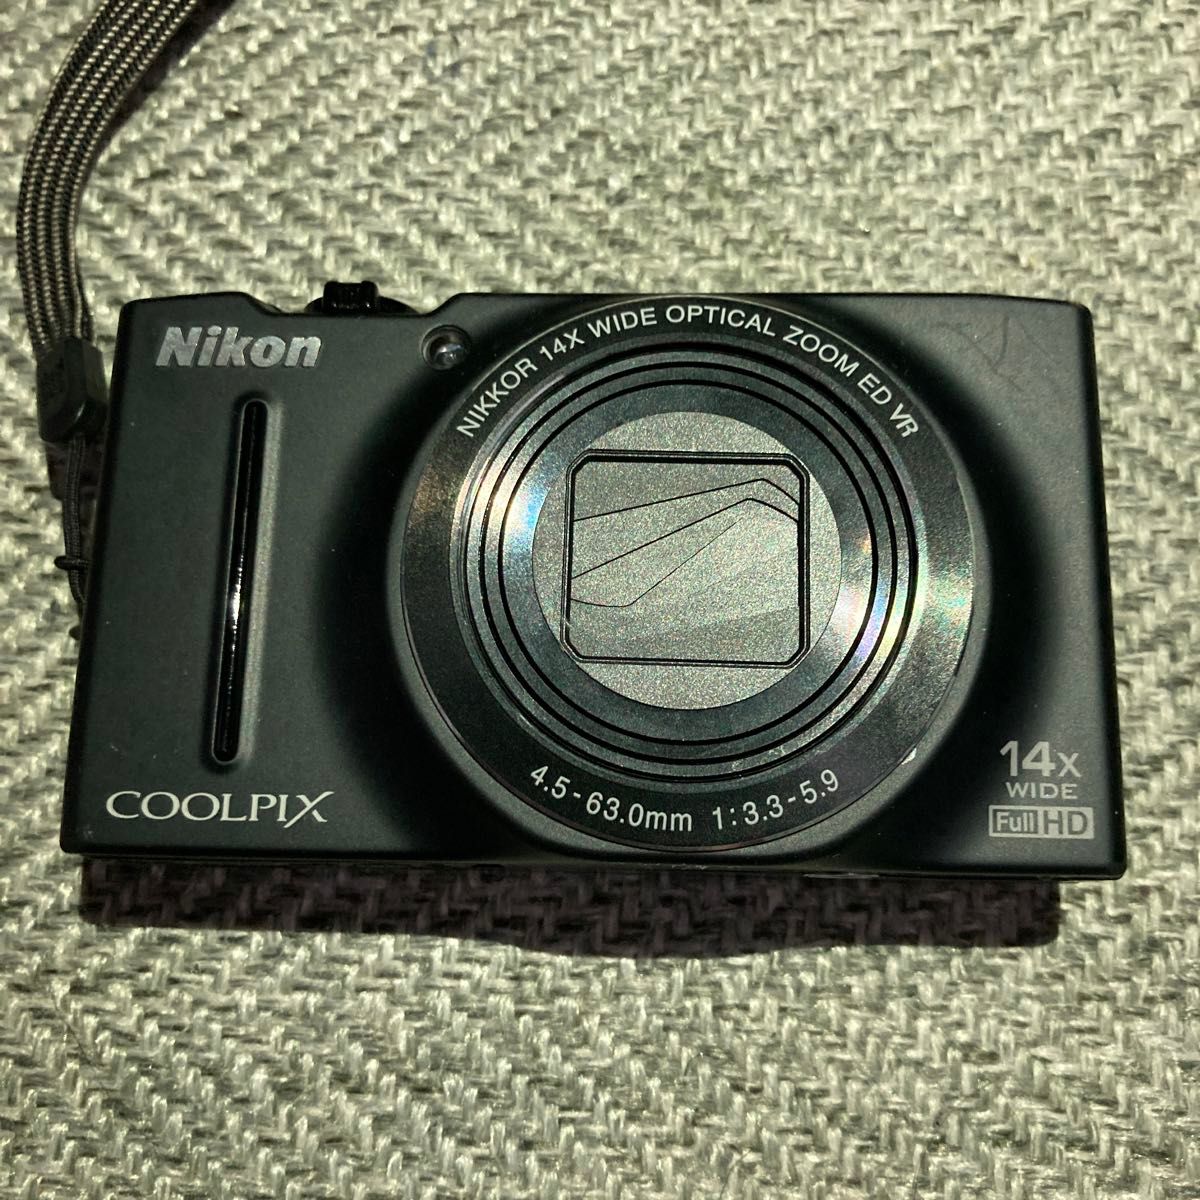 【液晶潰れあり】Nikon COOLPIX S8200